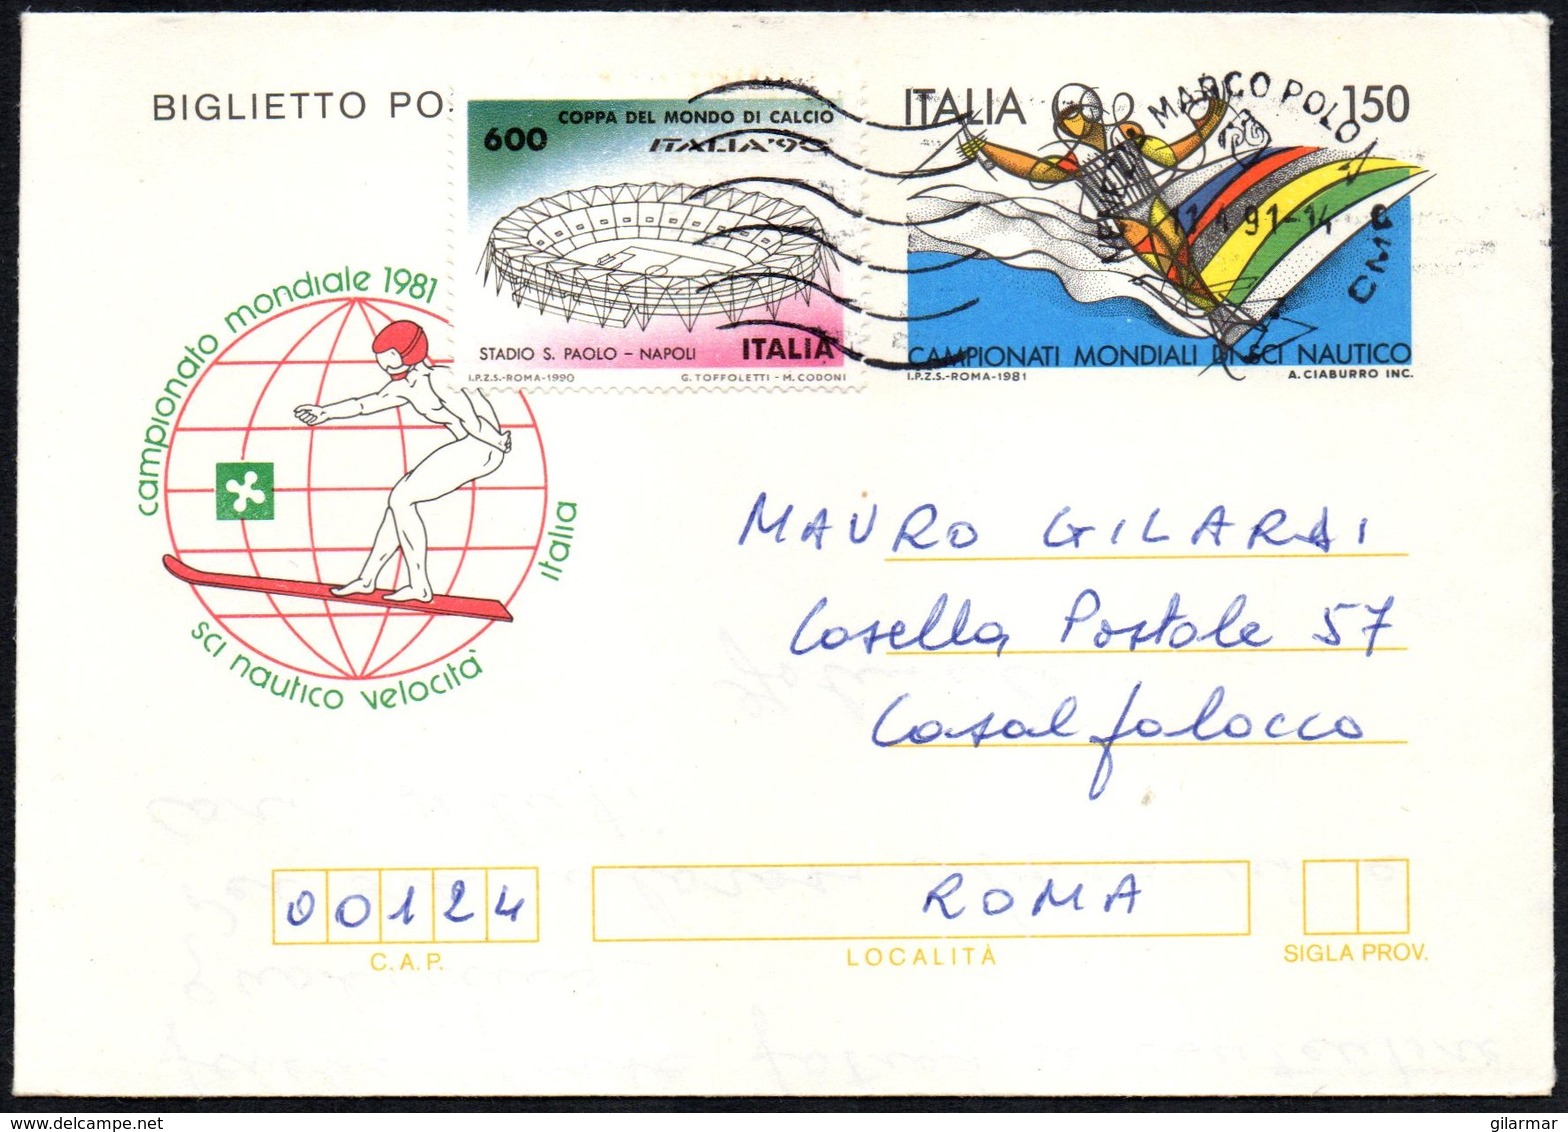 WATER SKIING - ITALIA 1991 - CAMPIONATO MONDIALE 1981 SCI NAUTICO VELOCITA' - BIGLIETTO POSTALE VIAGGIATO - Ski Nautique